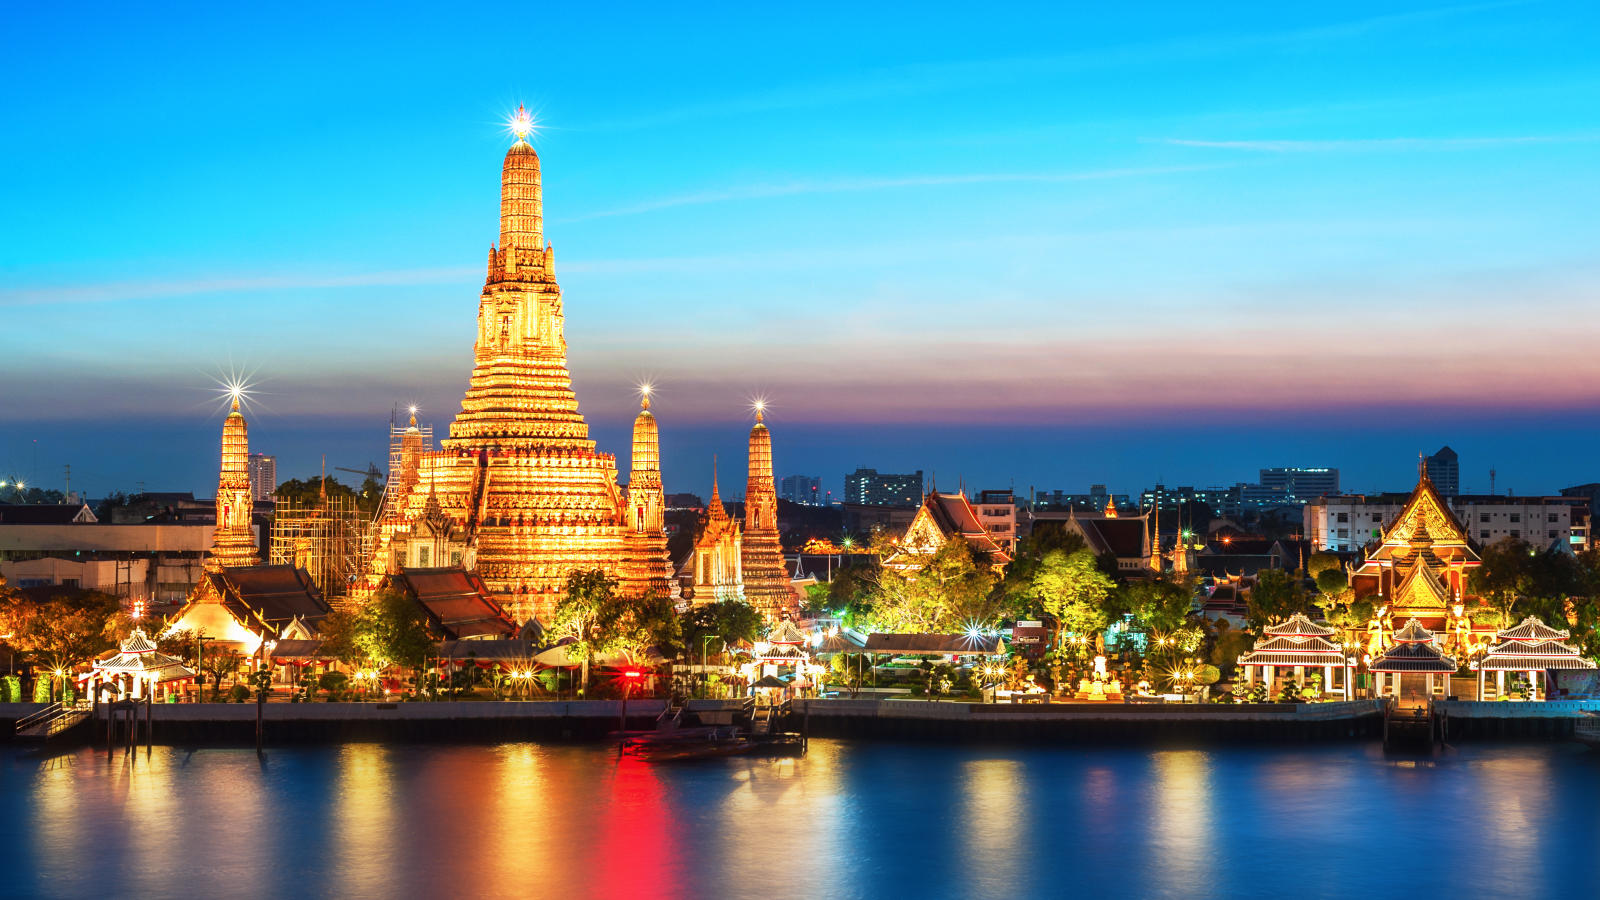 Thai tourism body says it opposes ‘sex tourism’